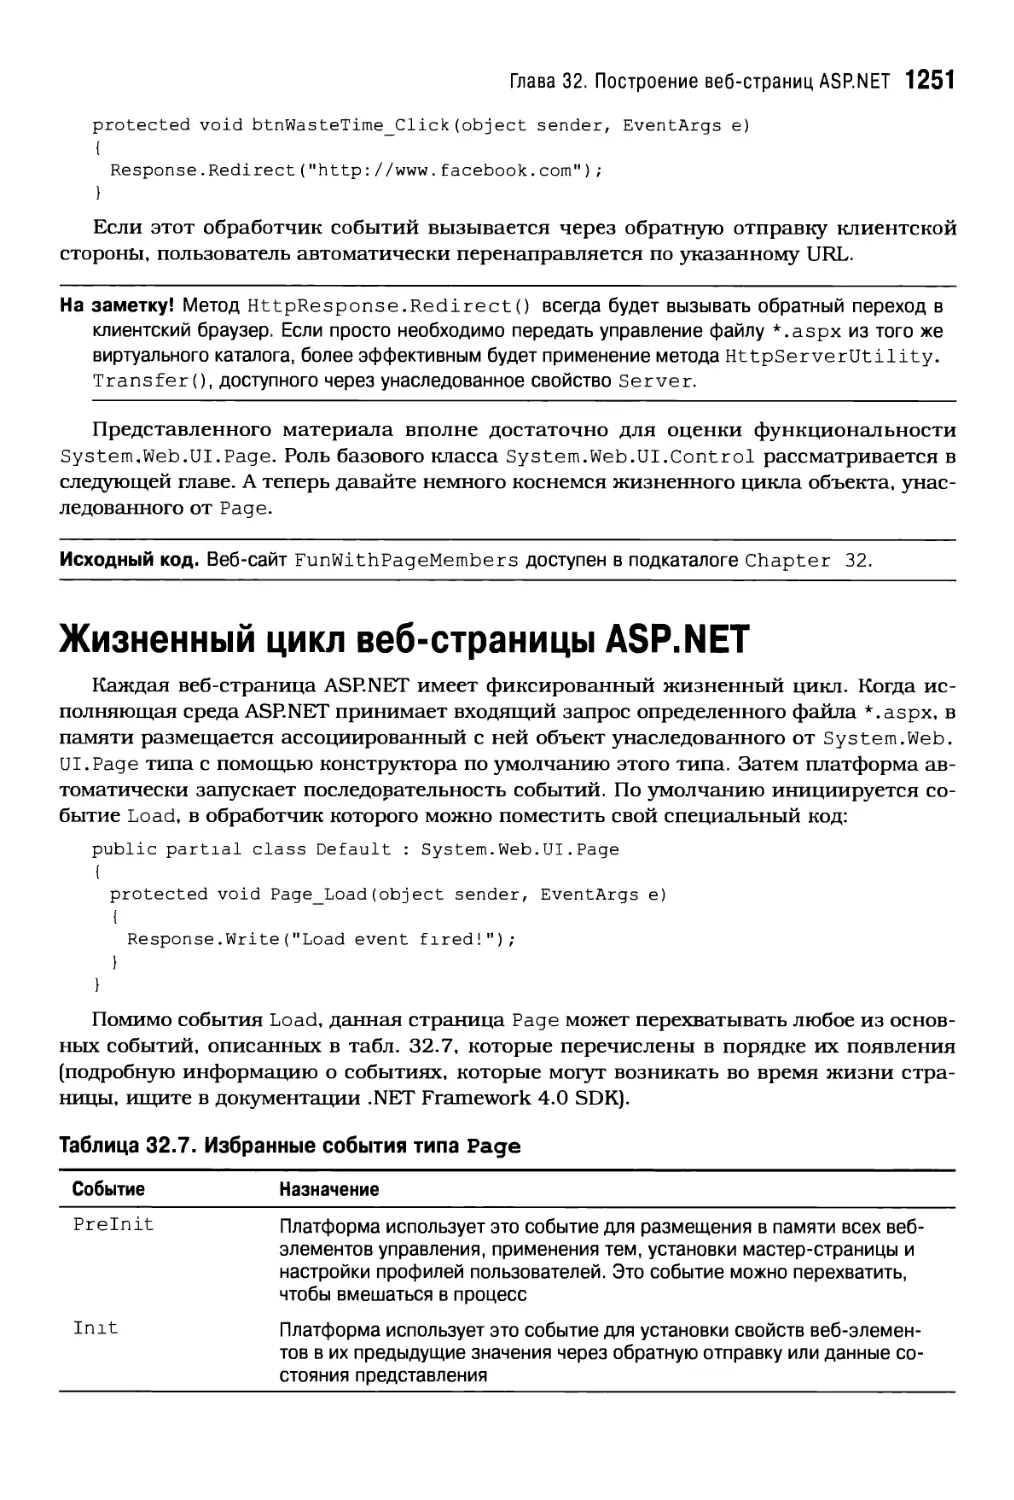 Жизненный цикл веб-страницы ASP.NET